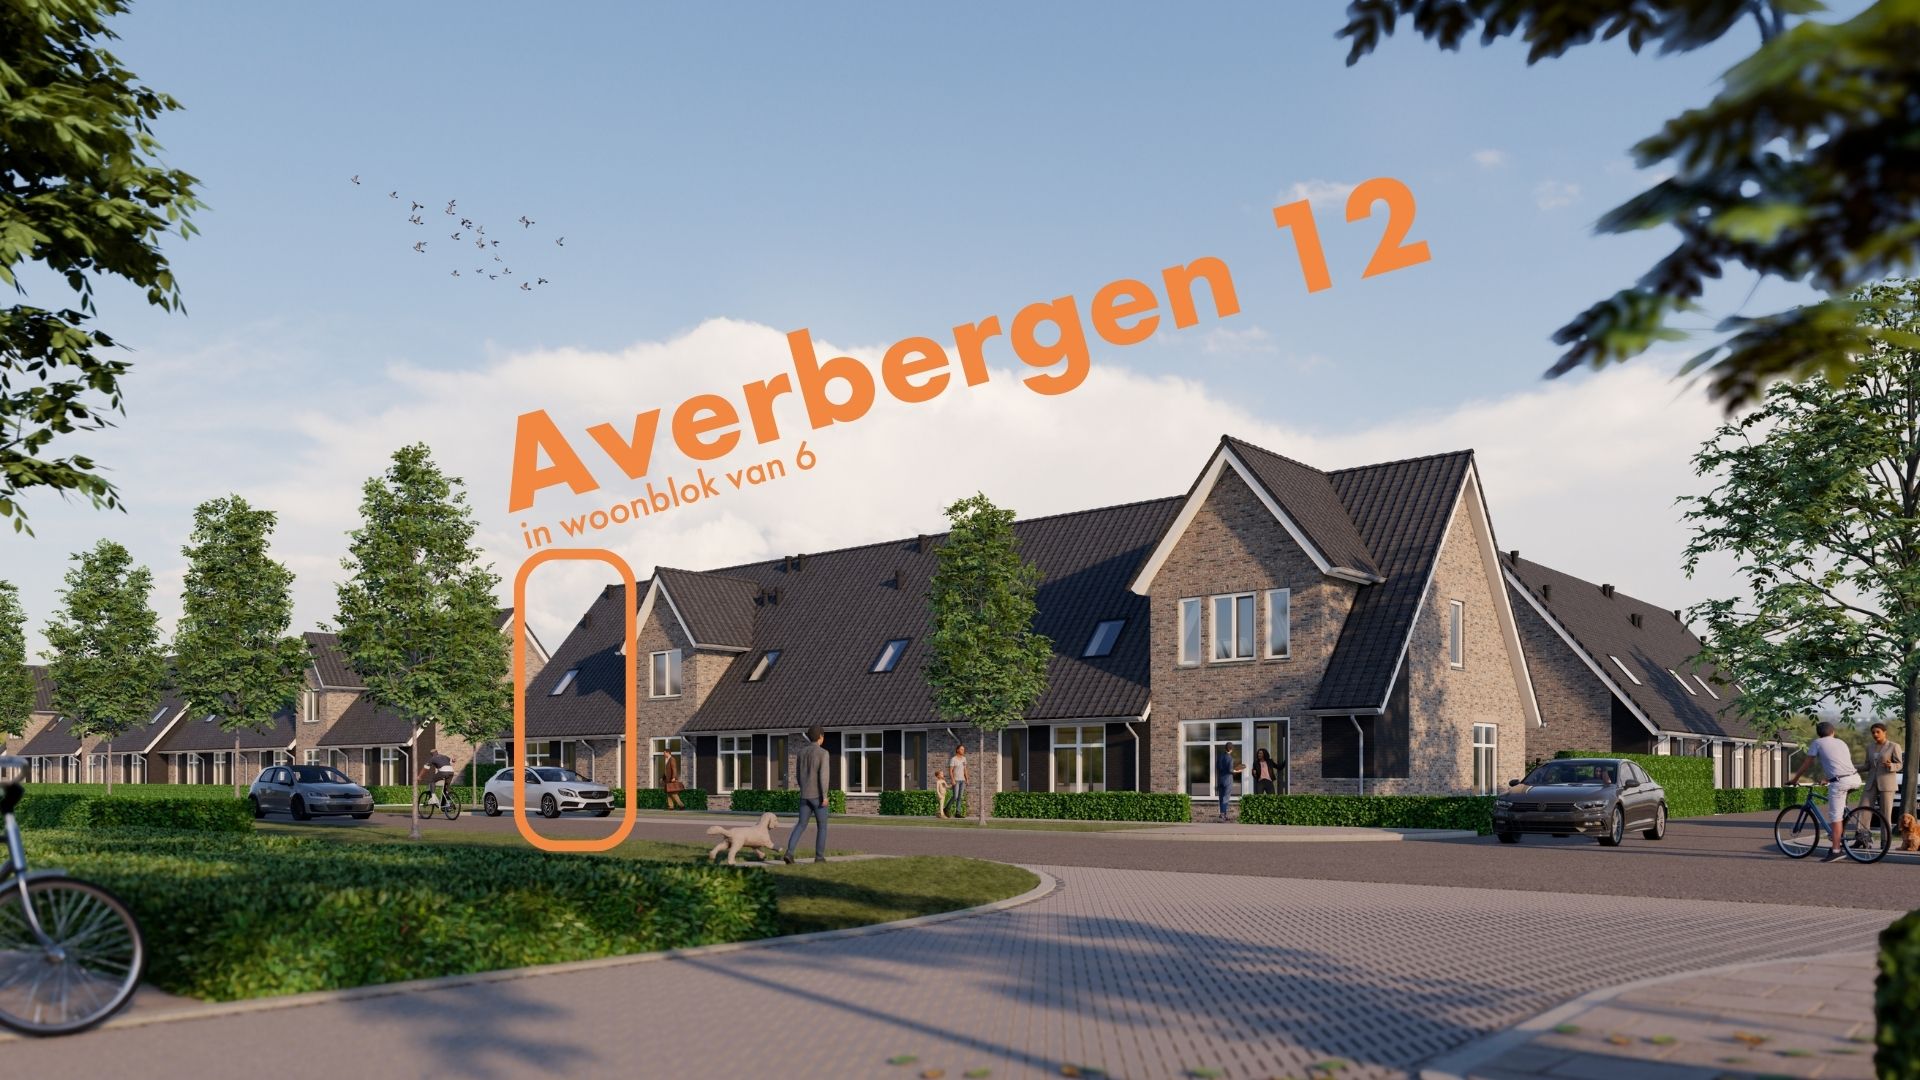 Averbergen 12, 8121 CD Olst, Nederland